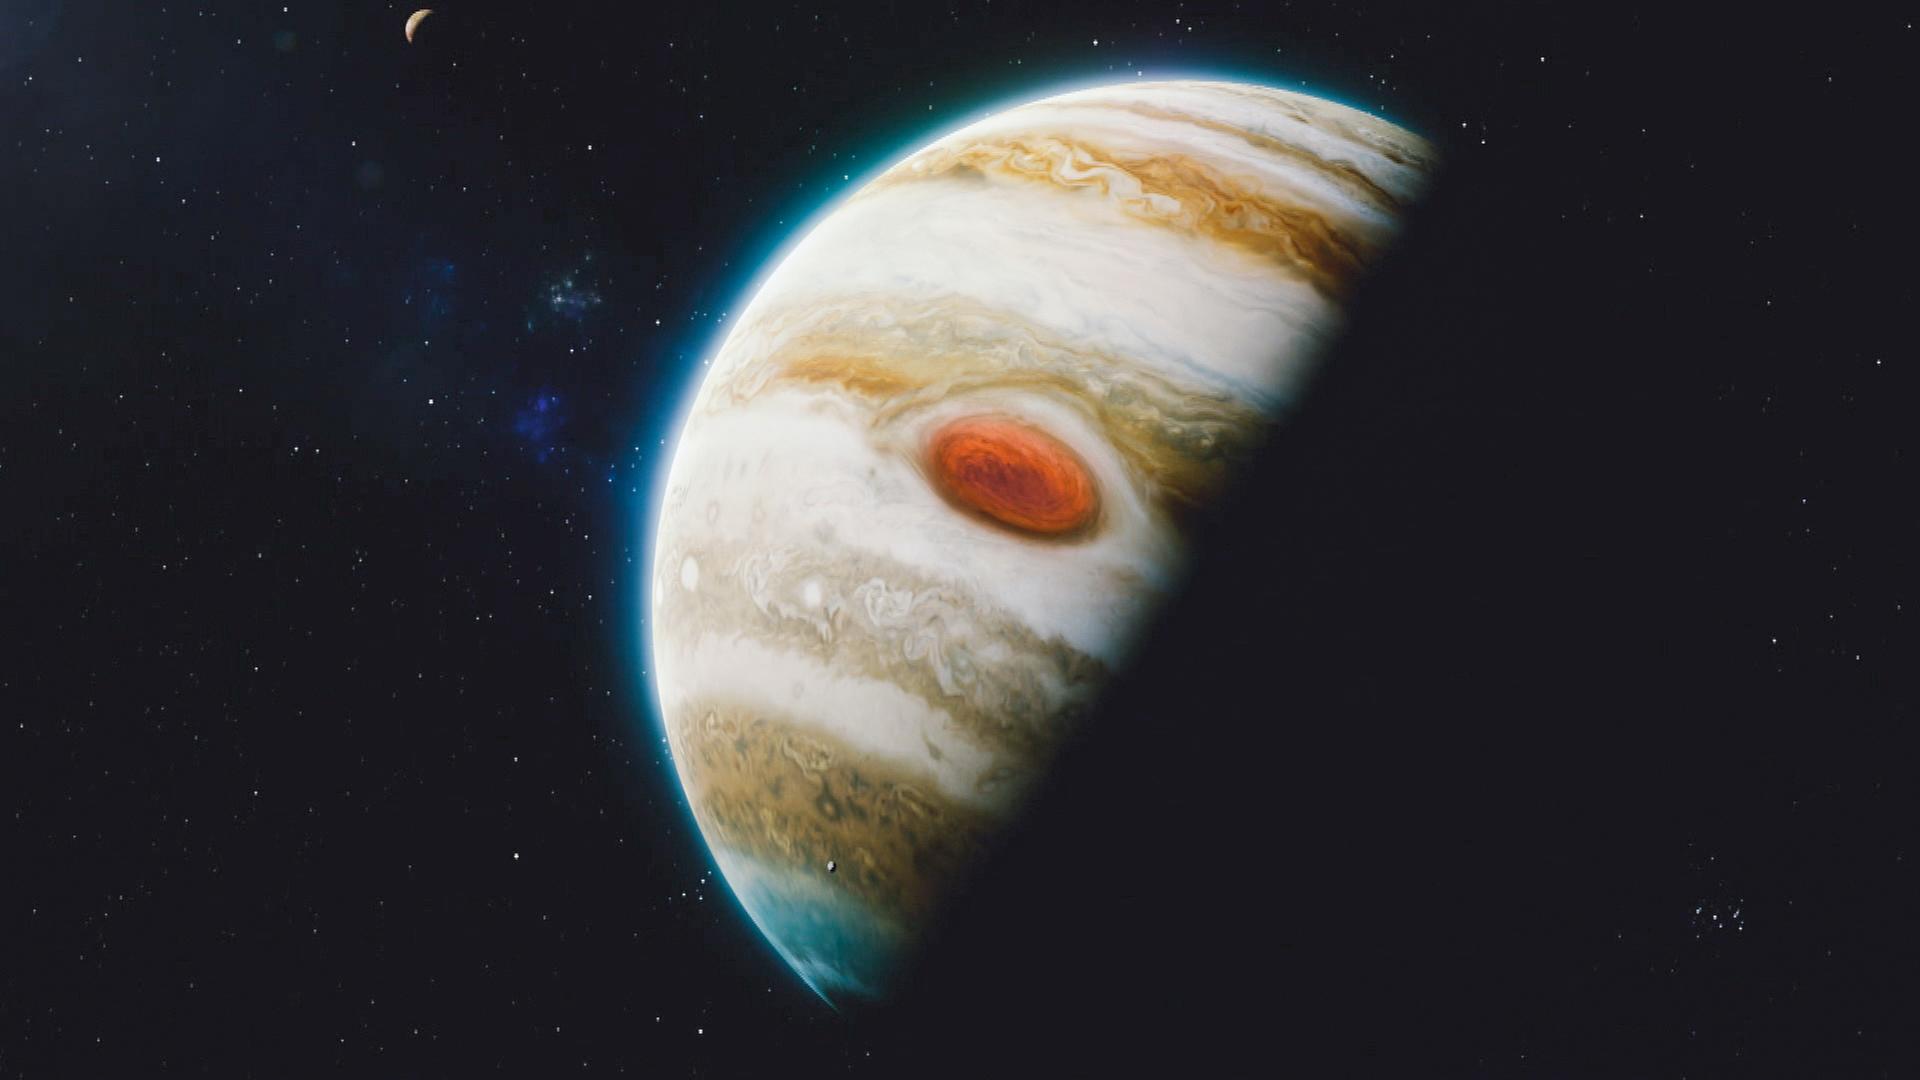  Computeranimation. Ein Planet ist im Halbschatten zur Hälfte zu sehen. Er ist weiß-bräunlich gestreift und hat einen großen roten Fleck. Im Hintergrund ist ein Mond zu sehen.